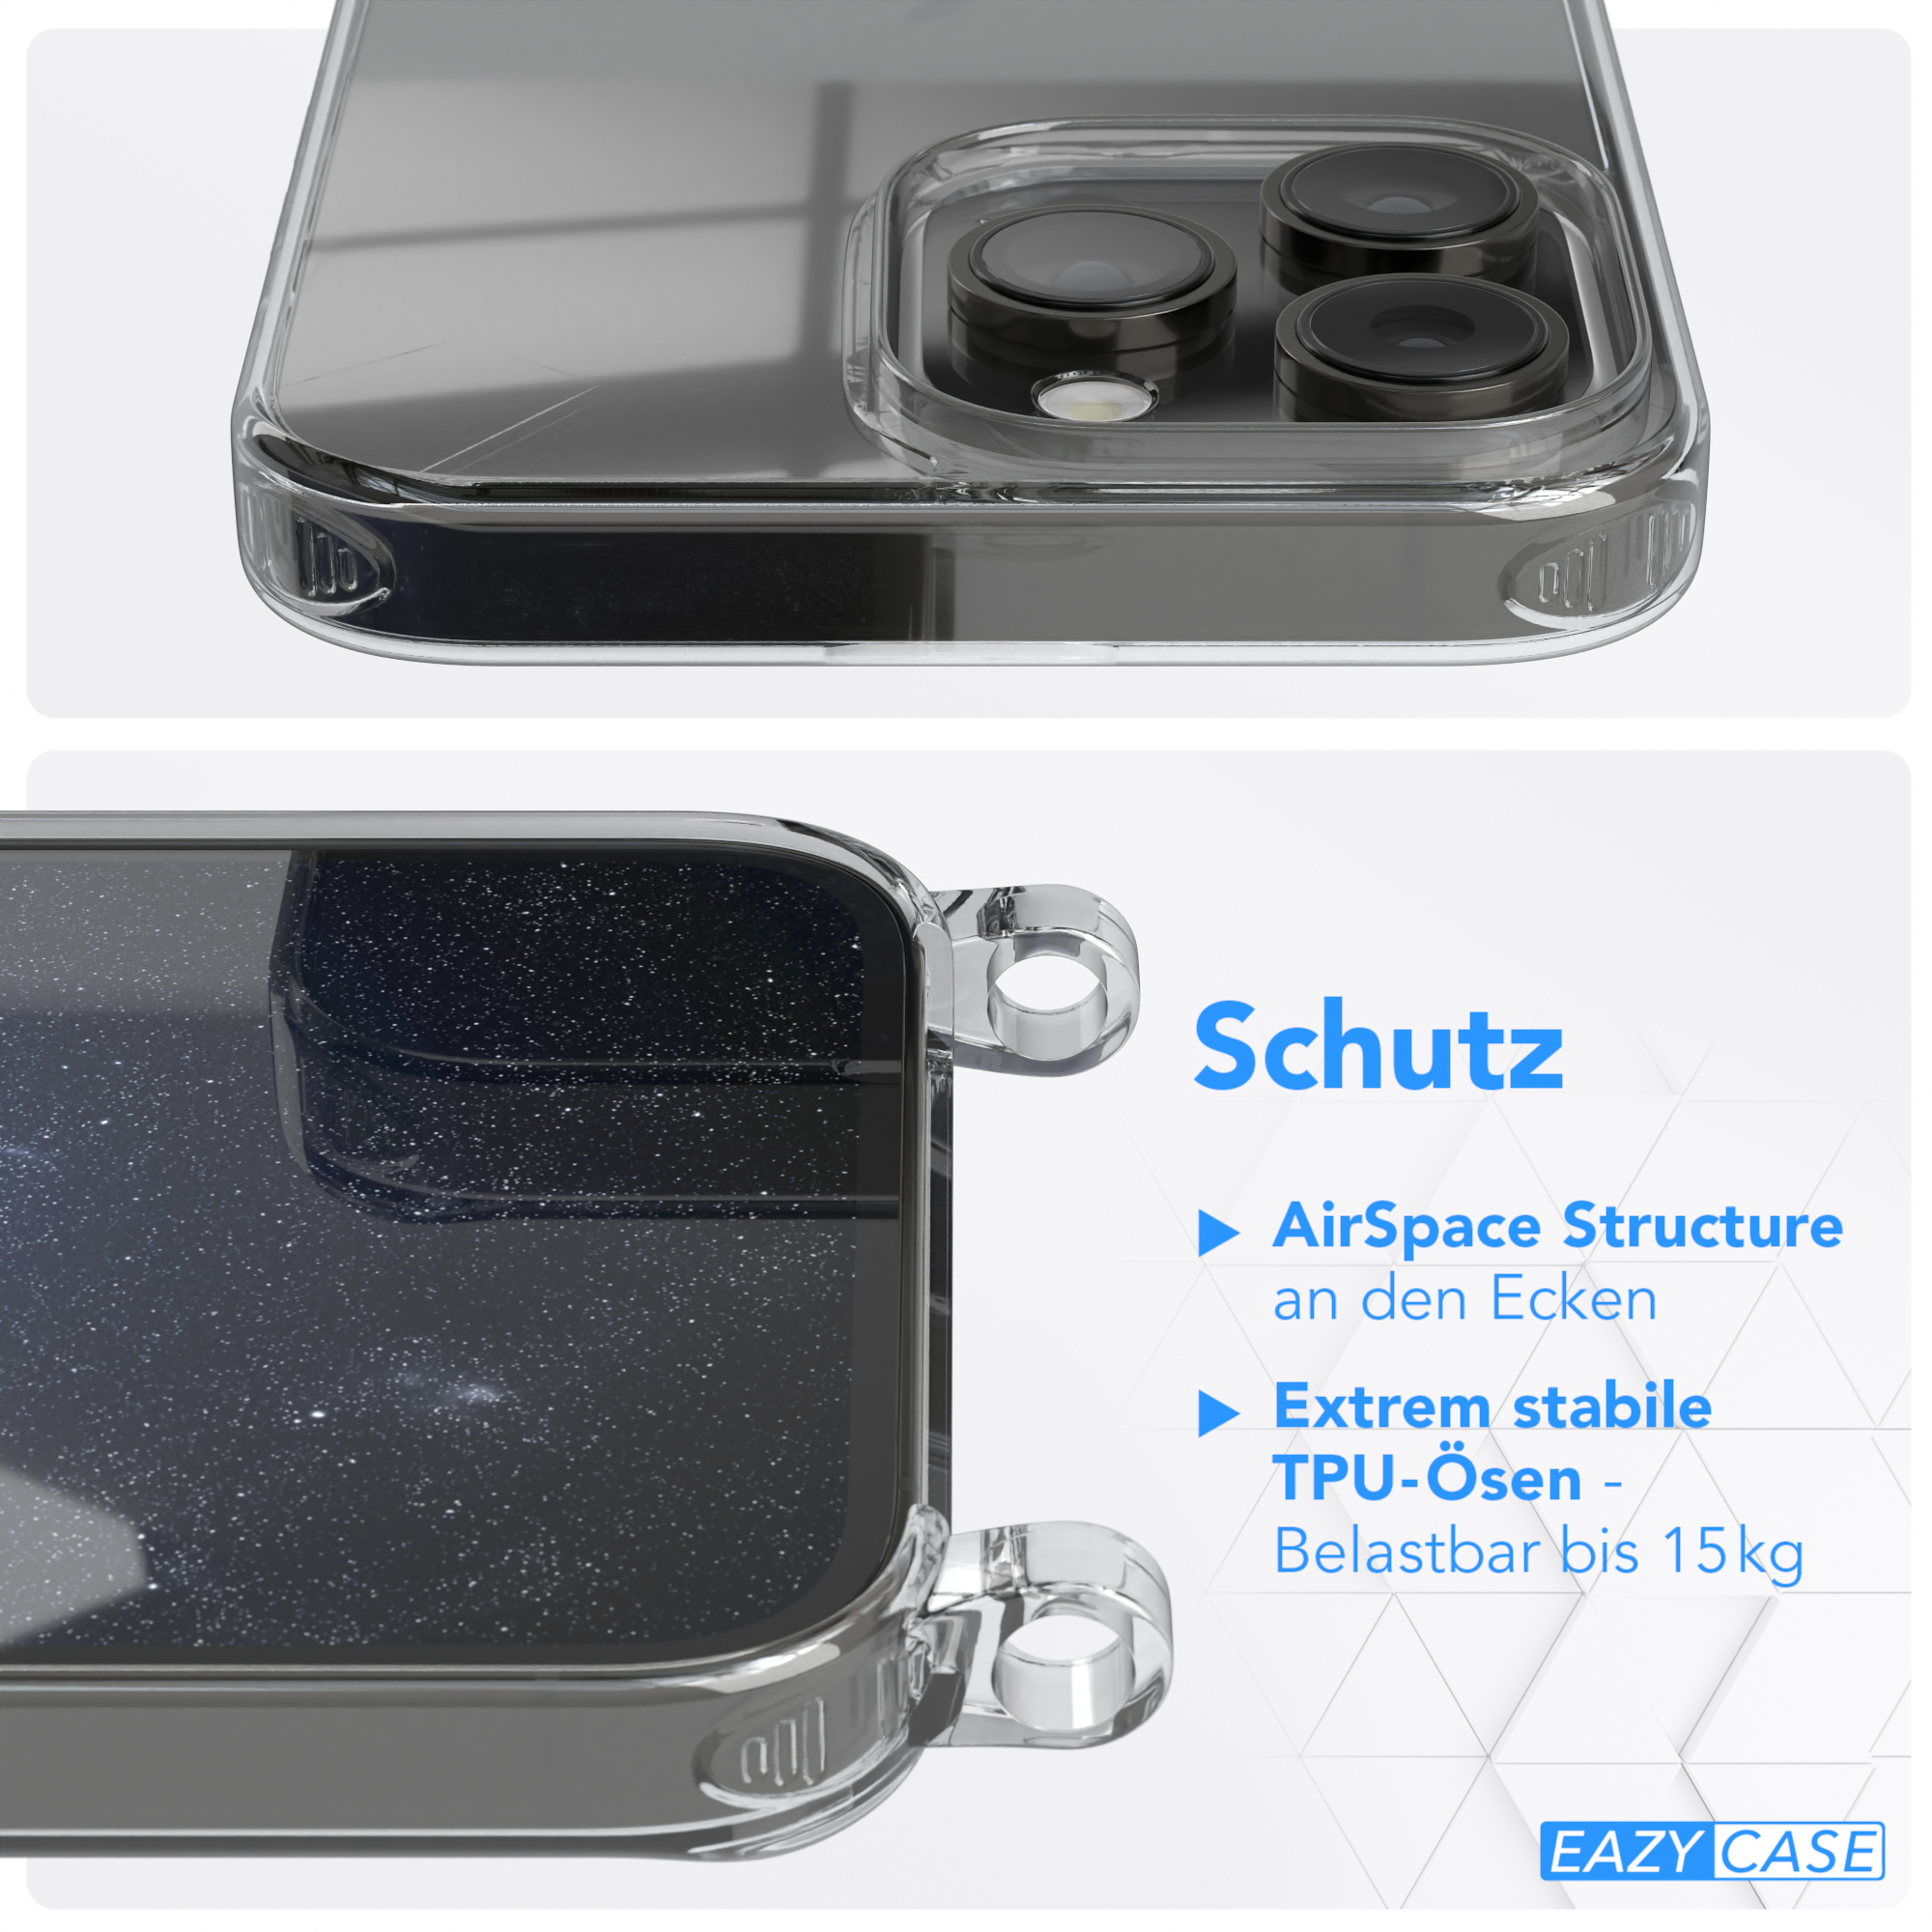 Umhängetasche, Nachtblau Max, unifarbend, Handyhülle iPhone 14 runder CASE / Transparente Kette EAZY Apple, Pro mit Dunkelblau